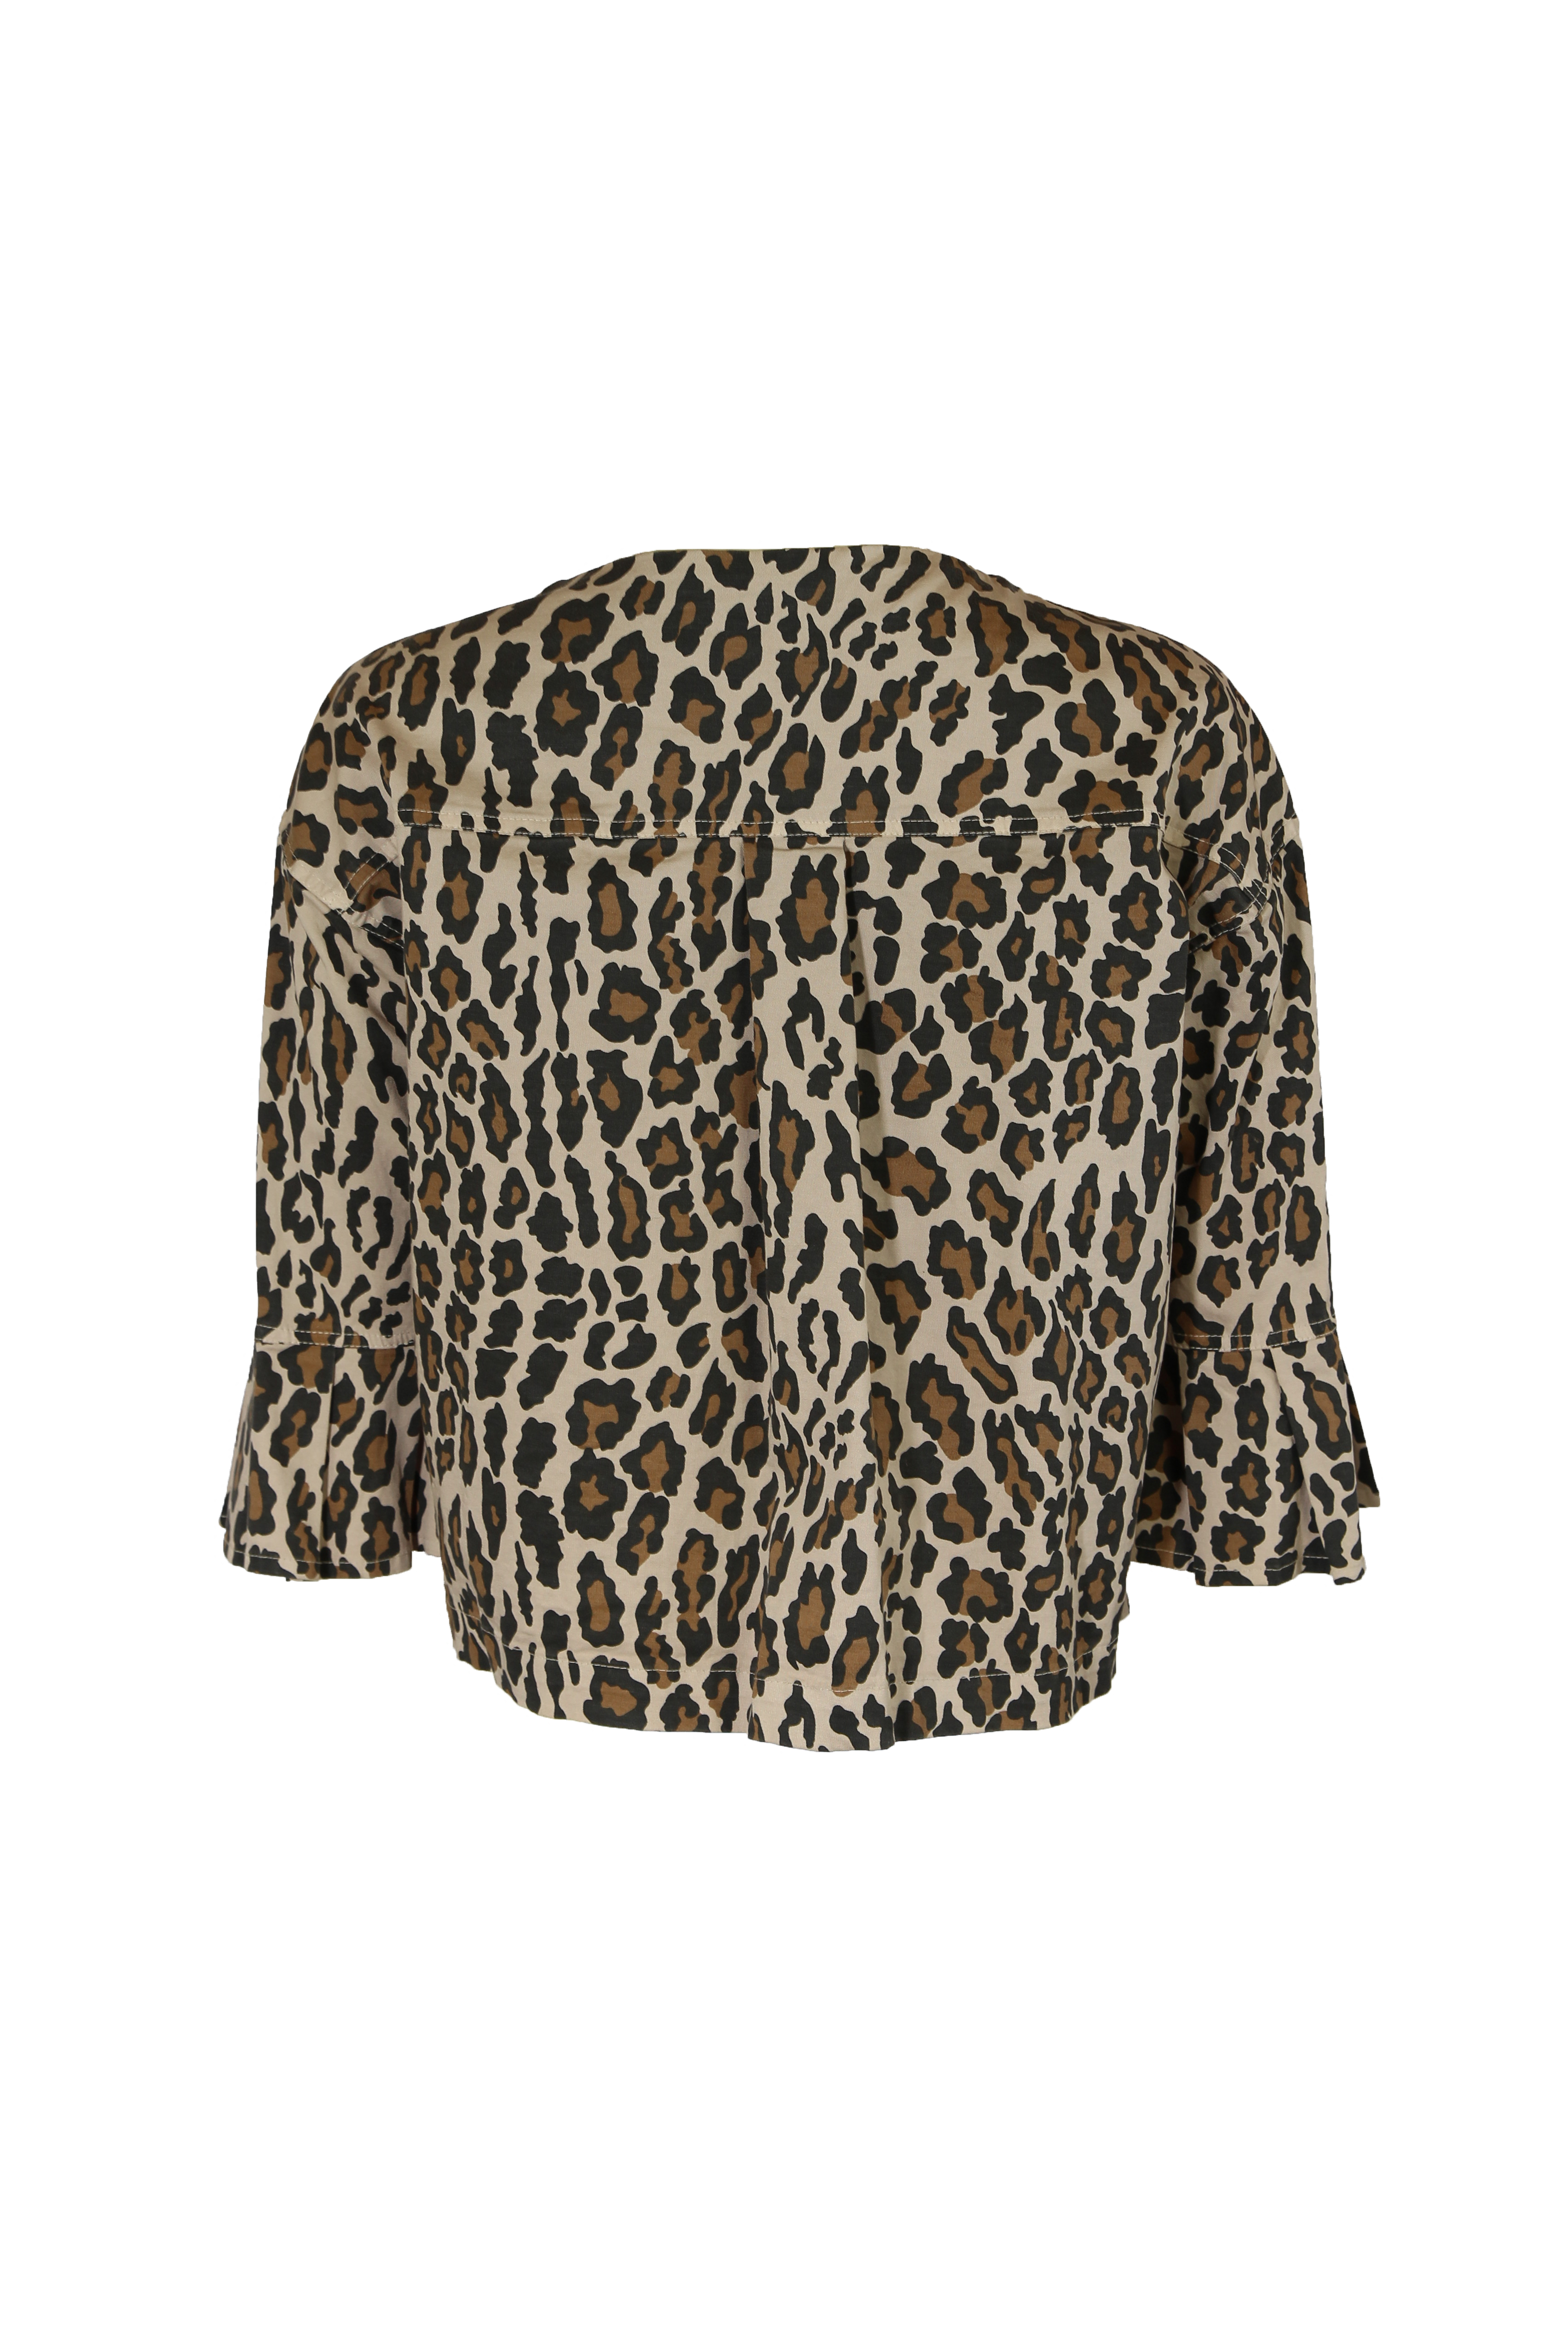 casaco-leopardo-2